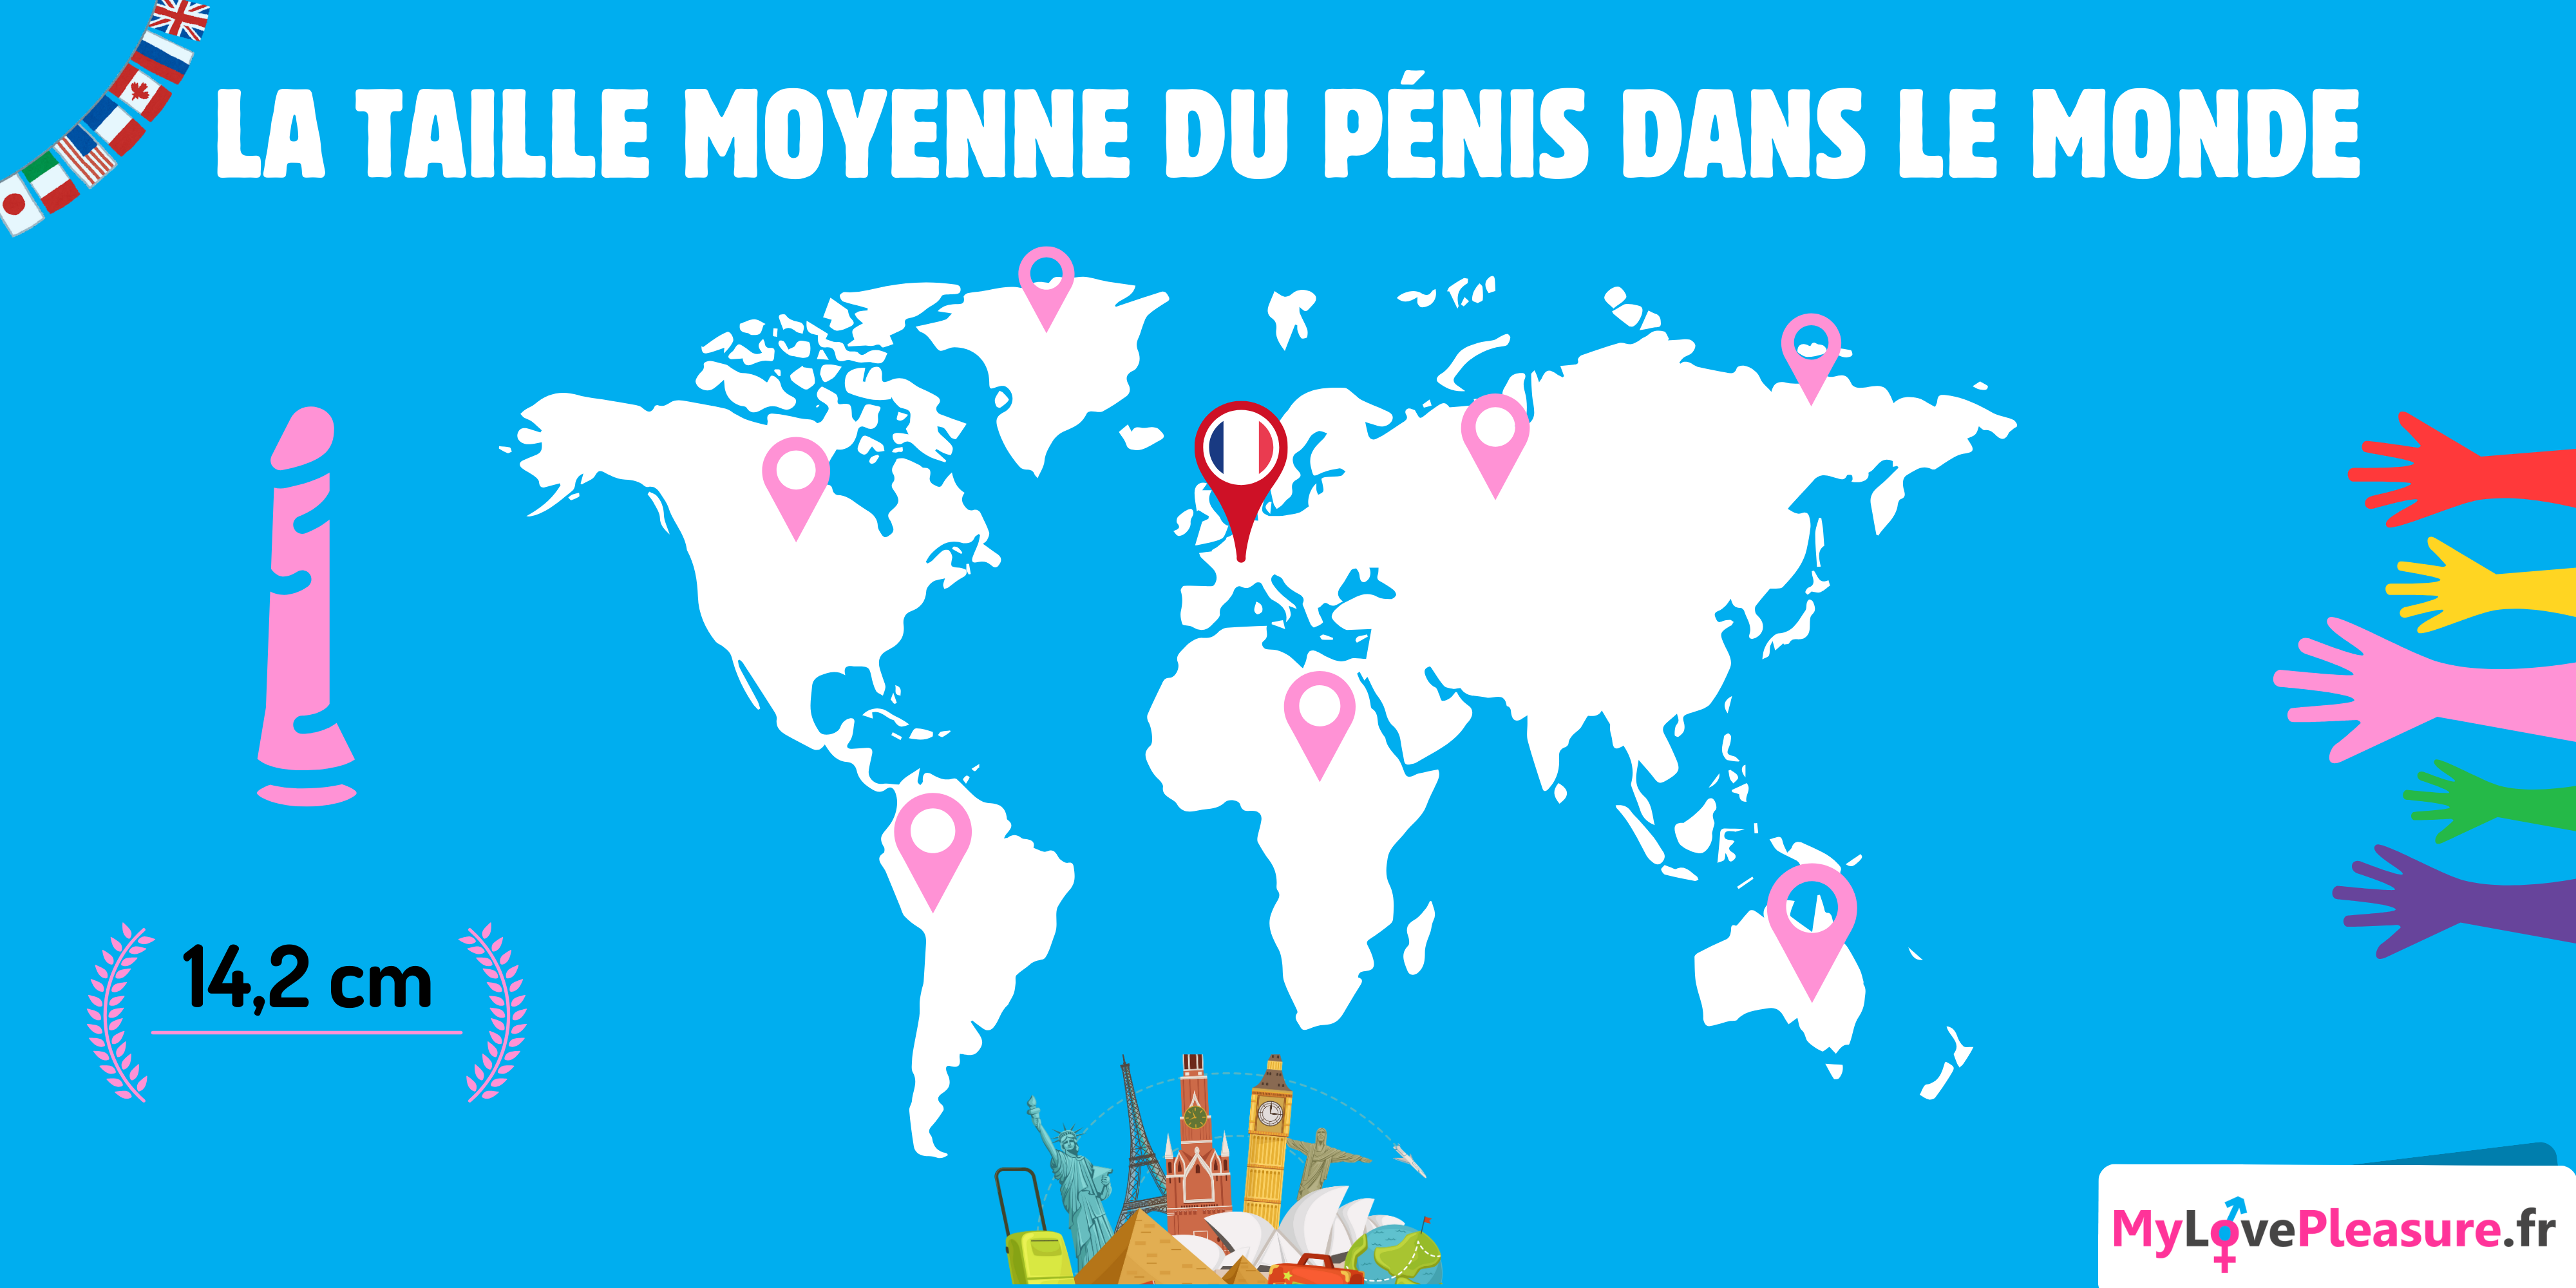 Taille moyenne du pénis - France et autres Pays mylovepleasure.fr